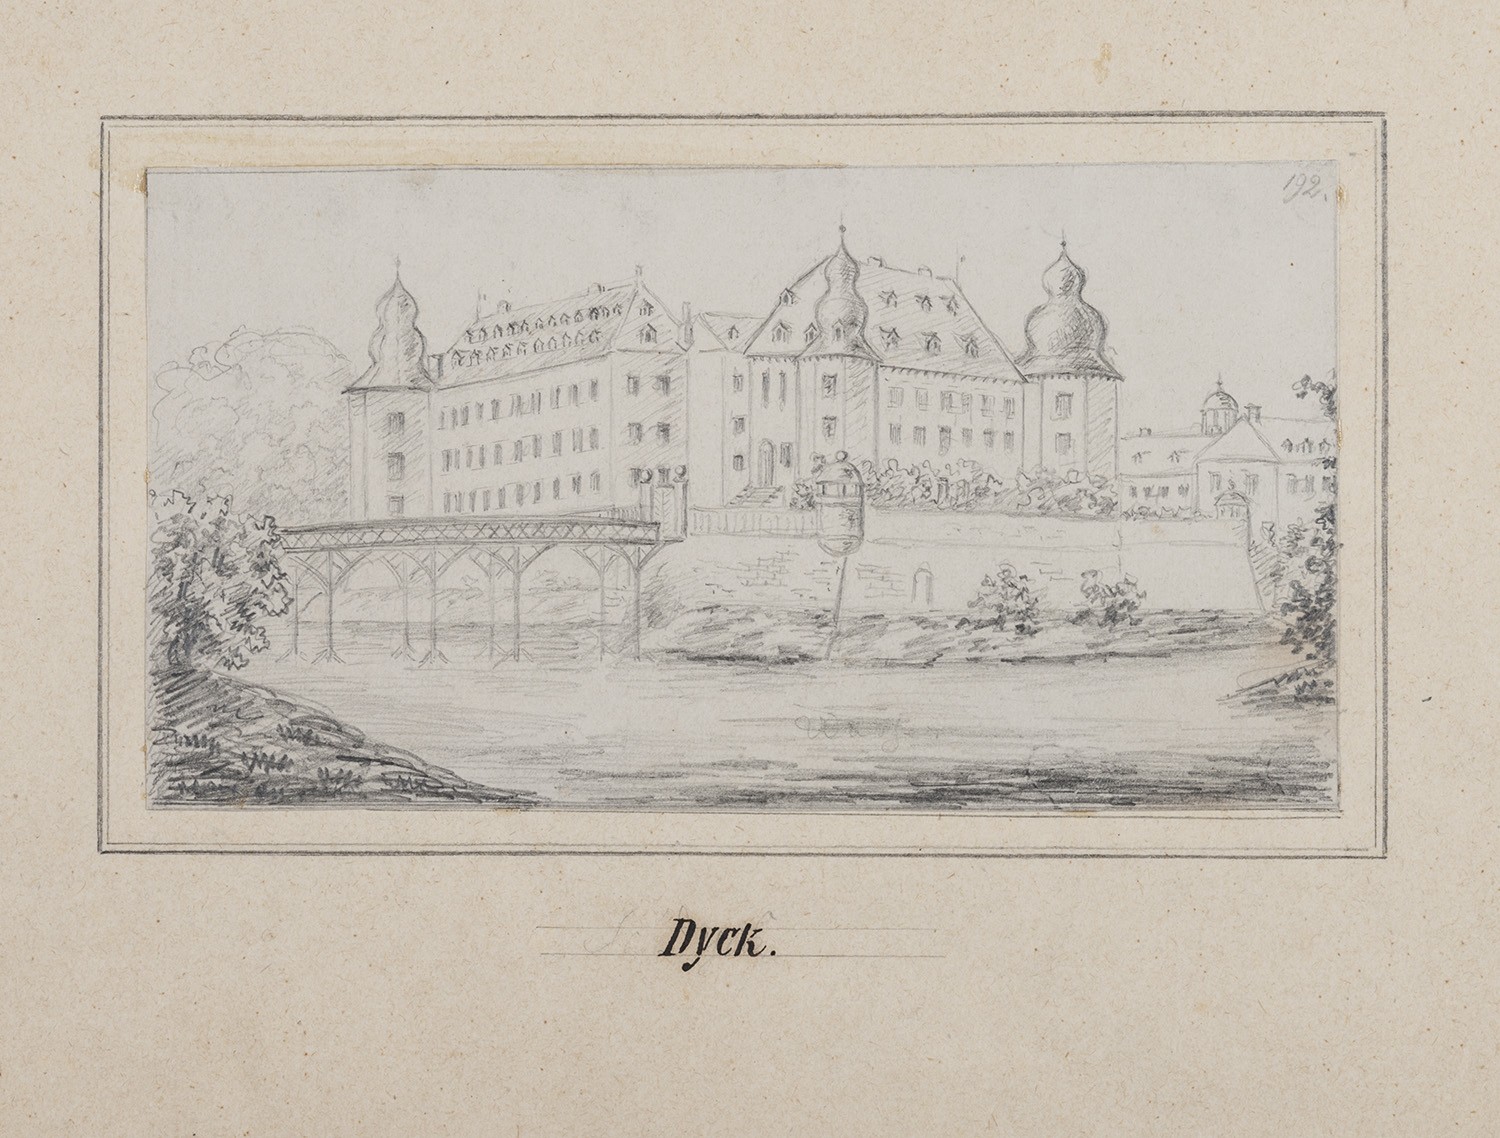 Dyck (Stadt Jüchen, Nordrhein-Westfalen): Schloss (Landesgeschichtliche Vereinigung für die Mark Brandenburg e.V., Archiv CC BY)